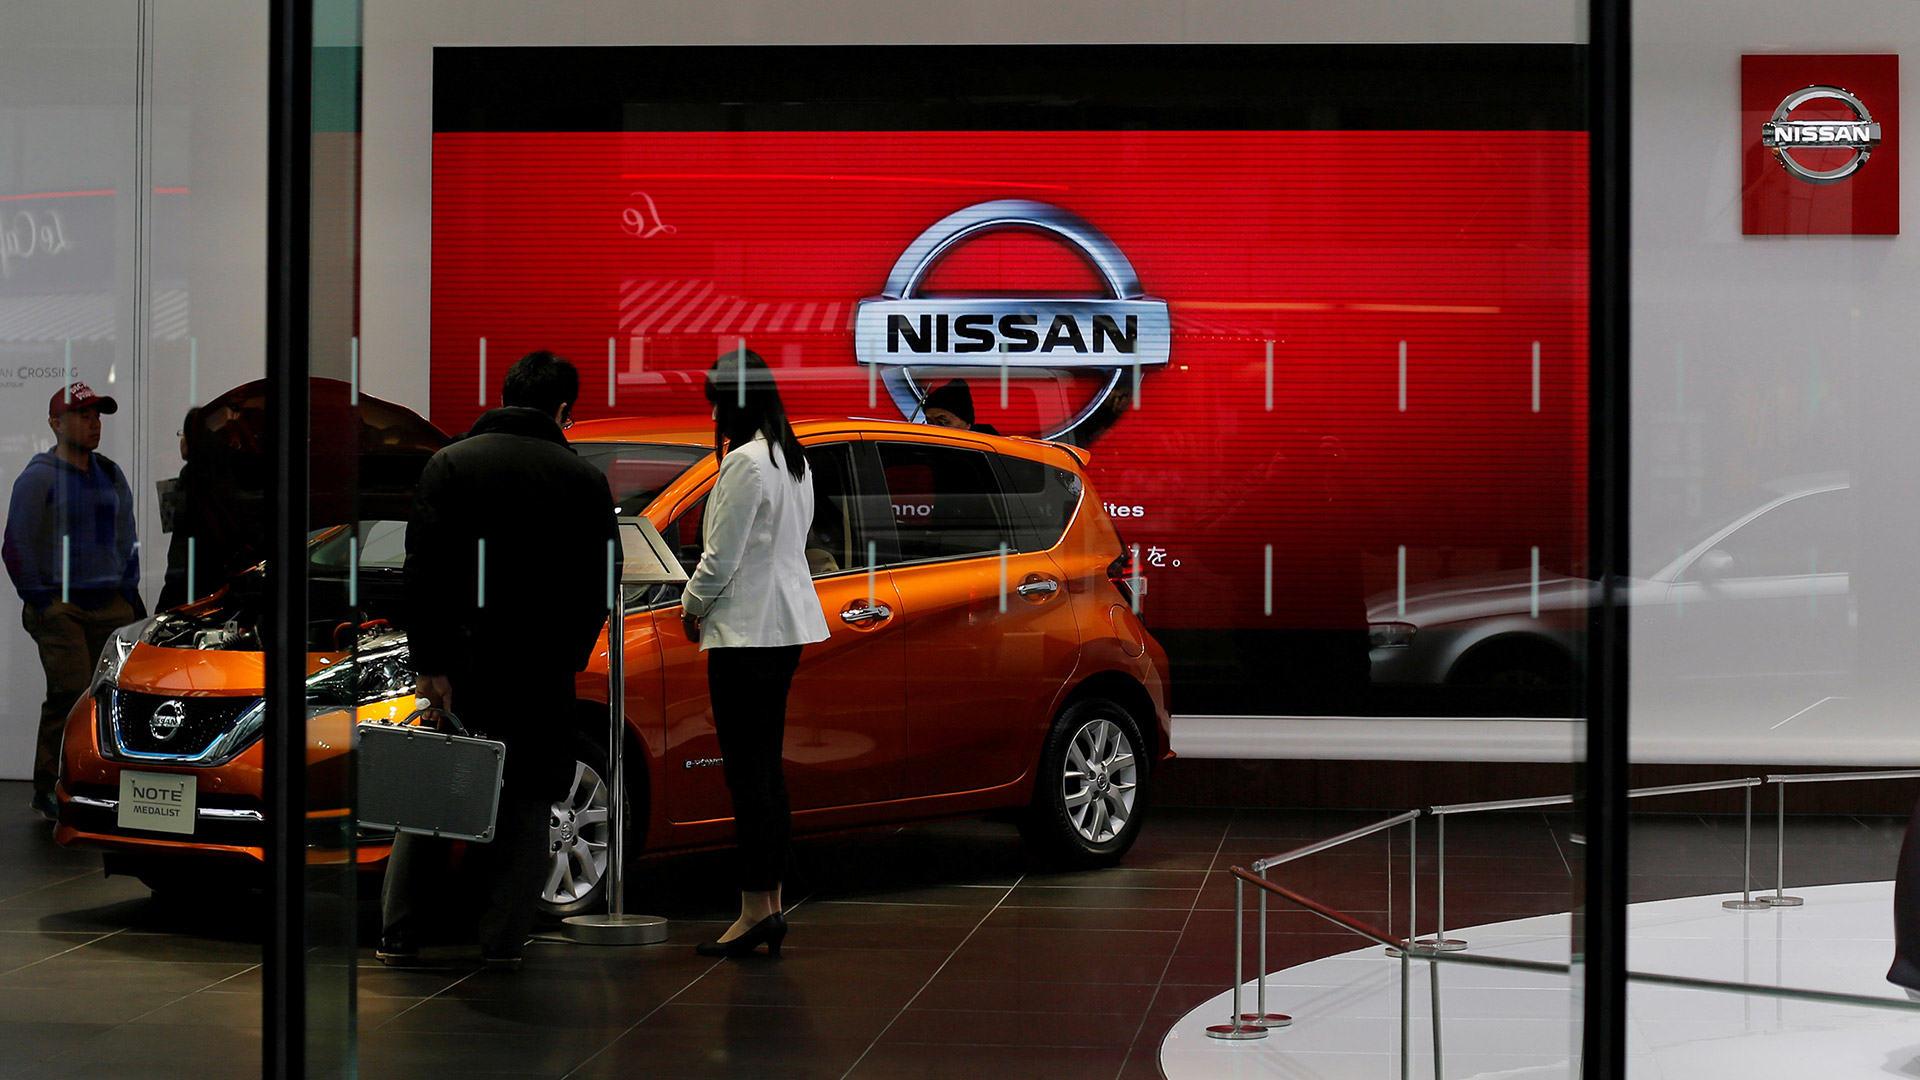 Las inspecciones irregulares de Nissan duraron al menos tres años, según Nikkei